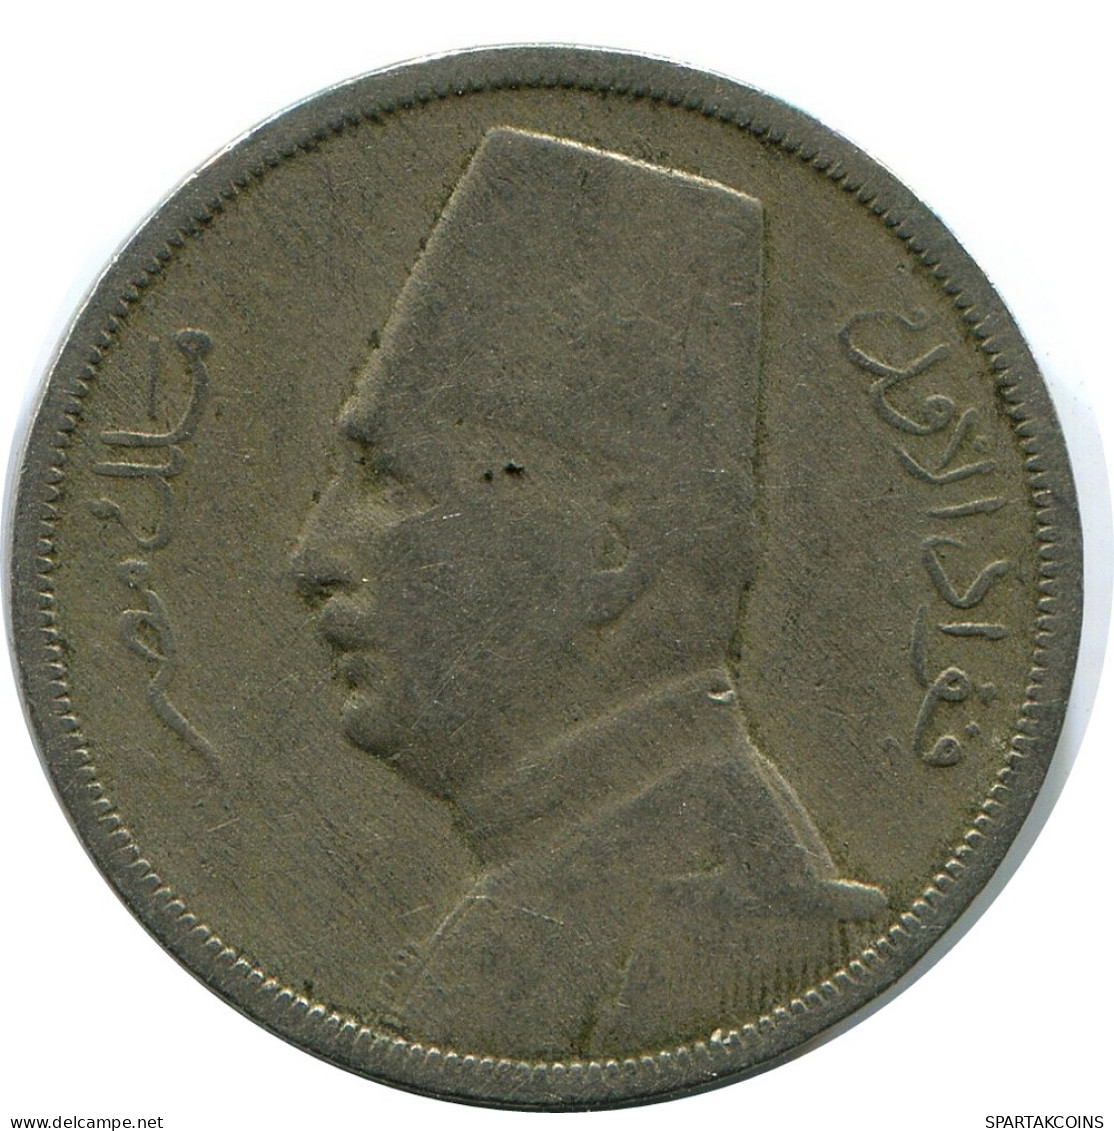 5 MILLIEMES 1929 EGYPT Islamic Coin #AH665.3.U - Egypt